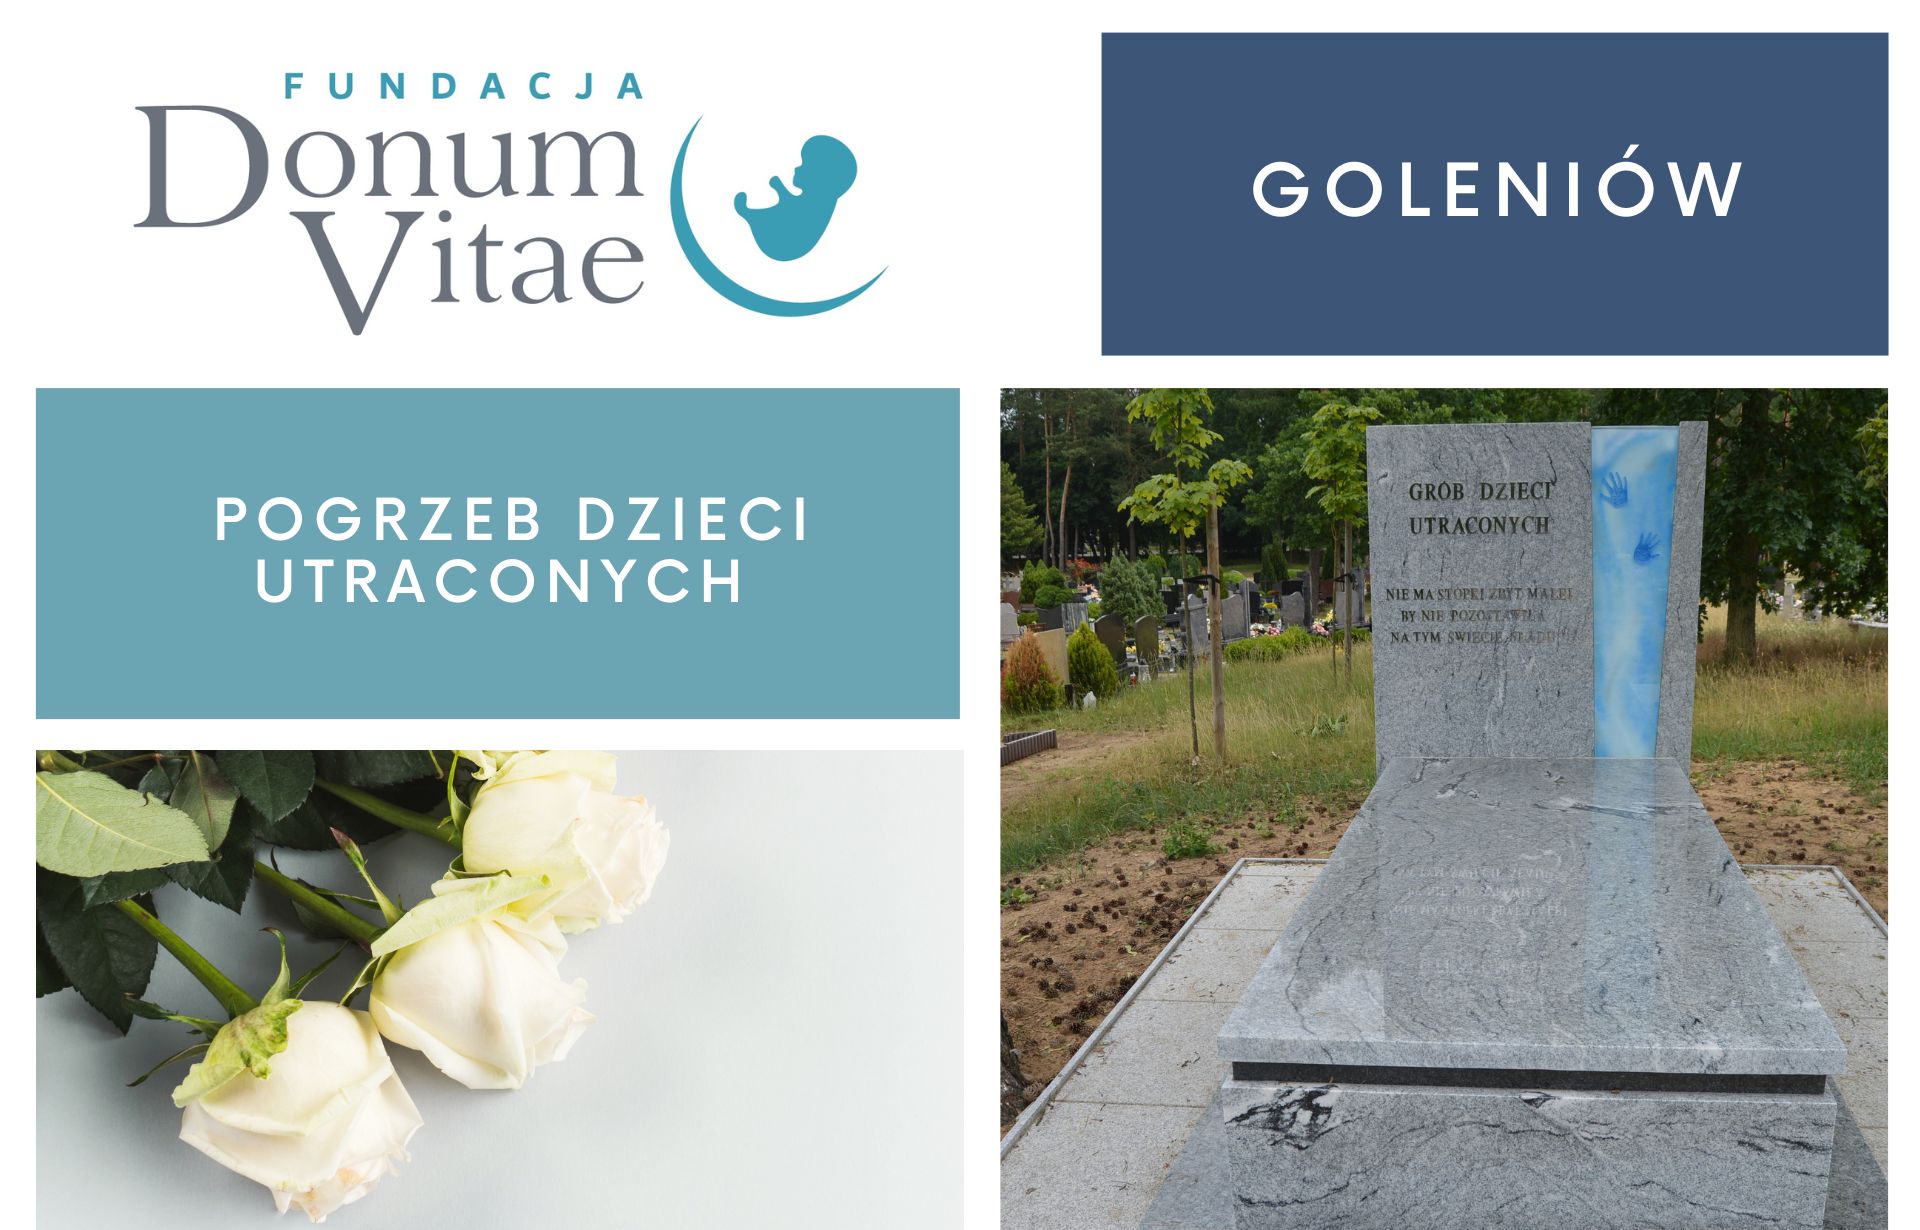 W Goleniowie odbędzie się kolejny pogrzeb Dzieci Utraconych